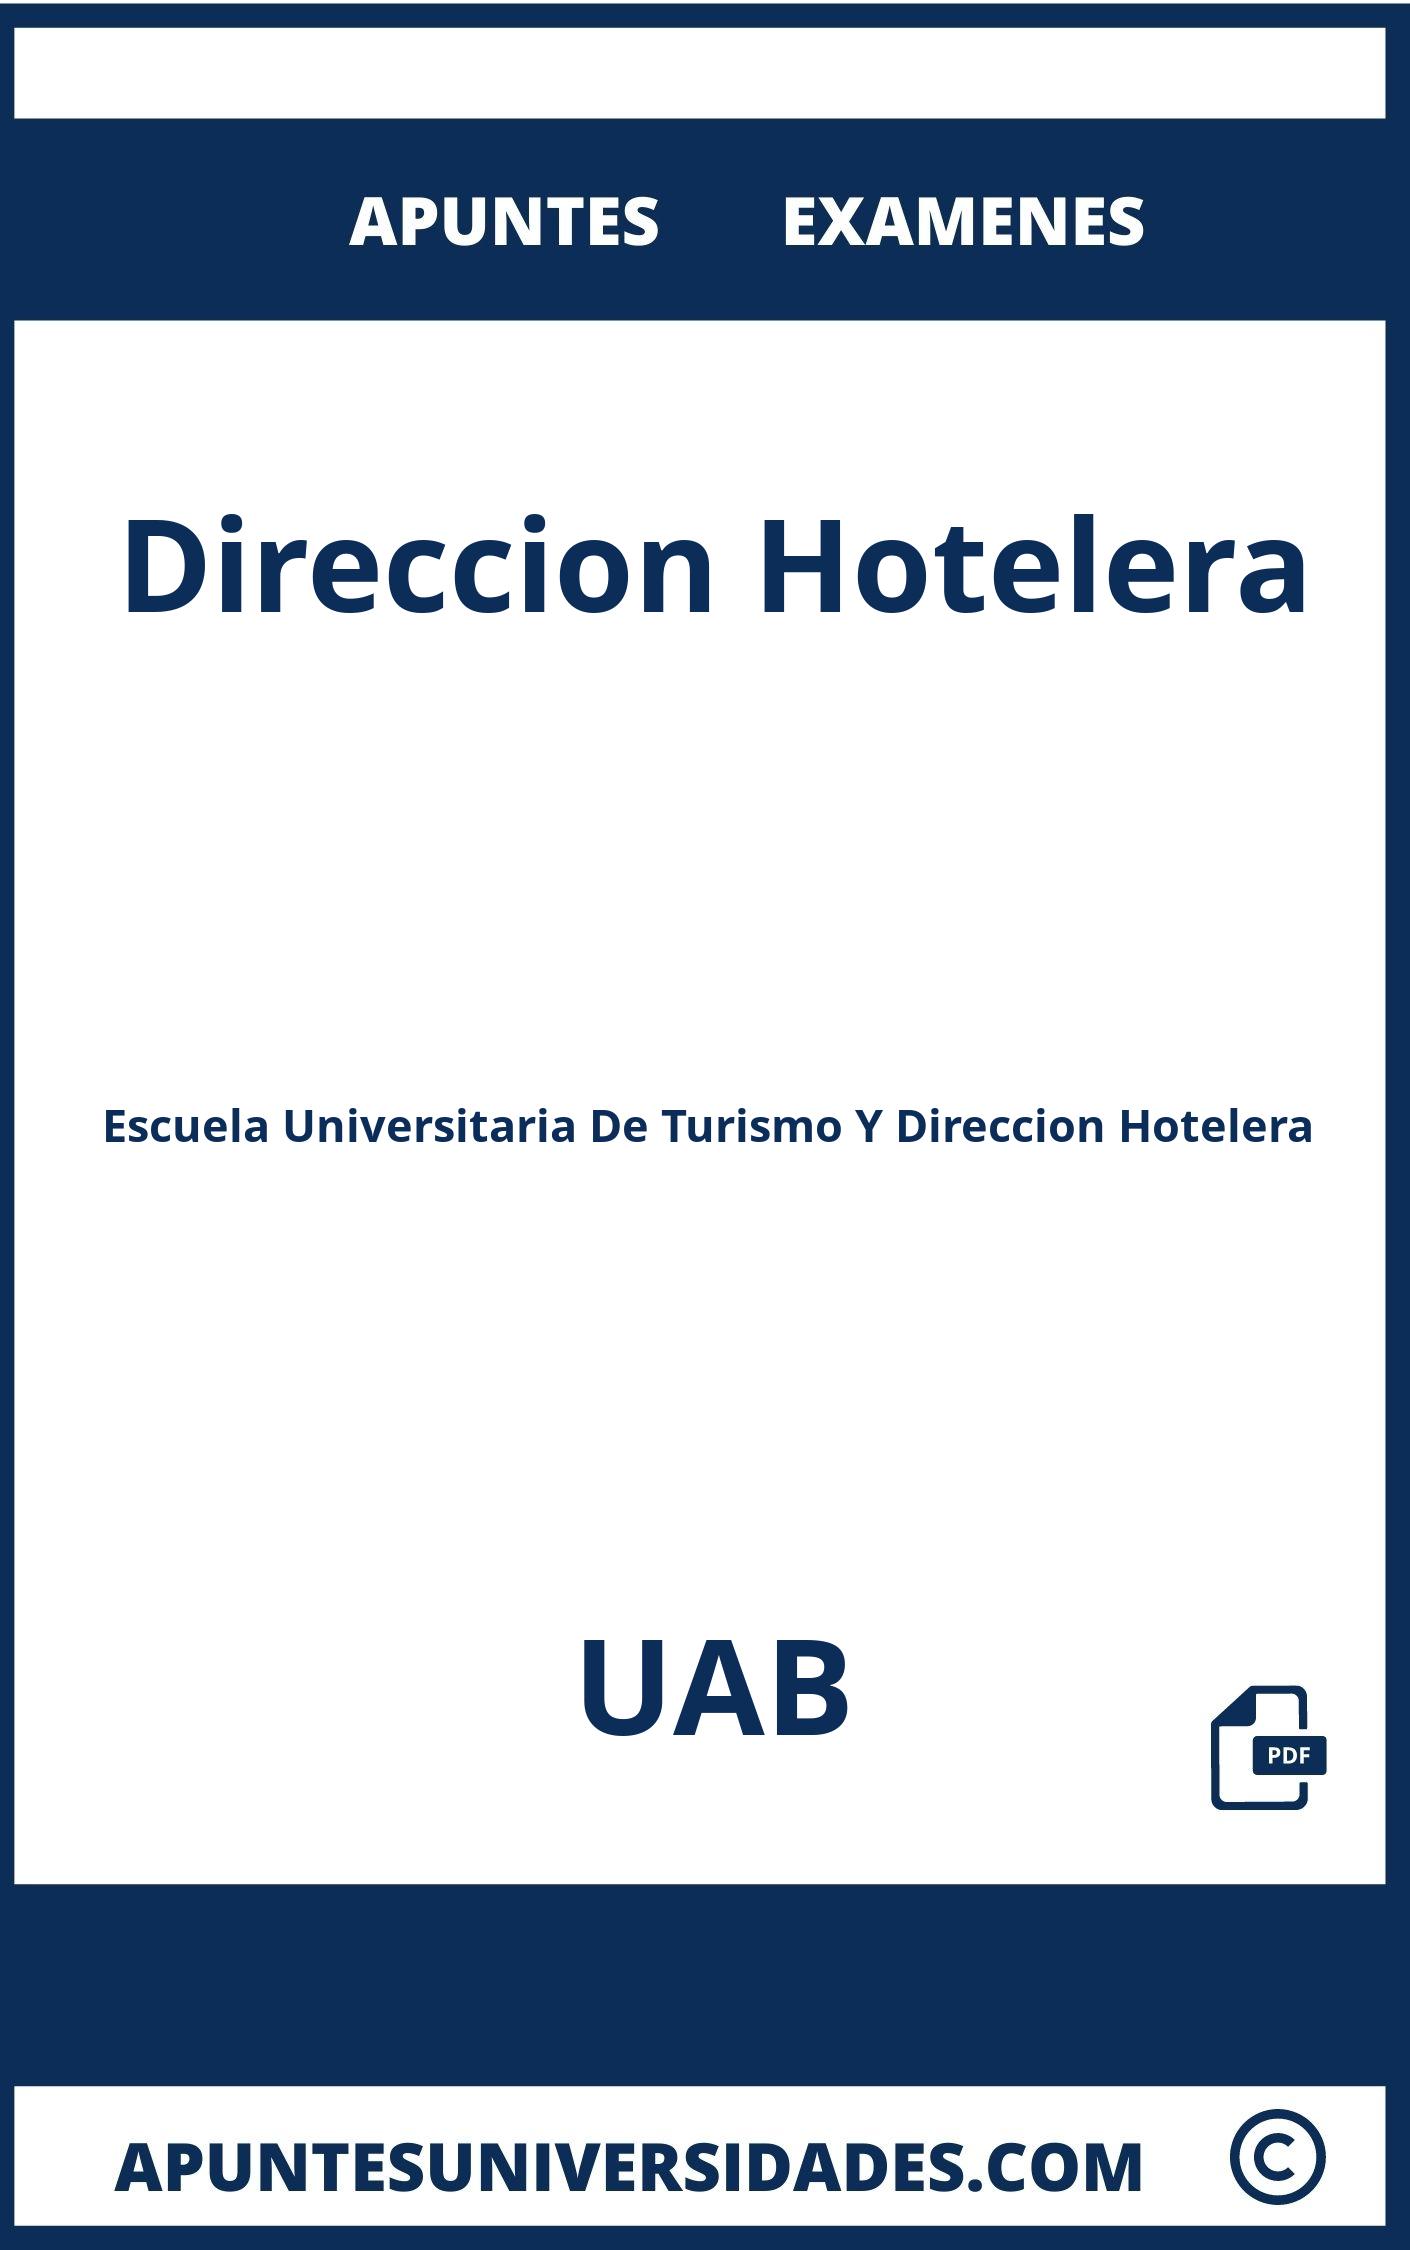 Examenes y Apuntes Direccion Hotelera UAB